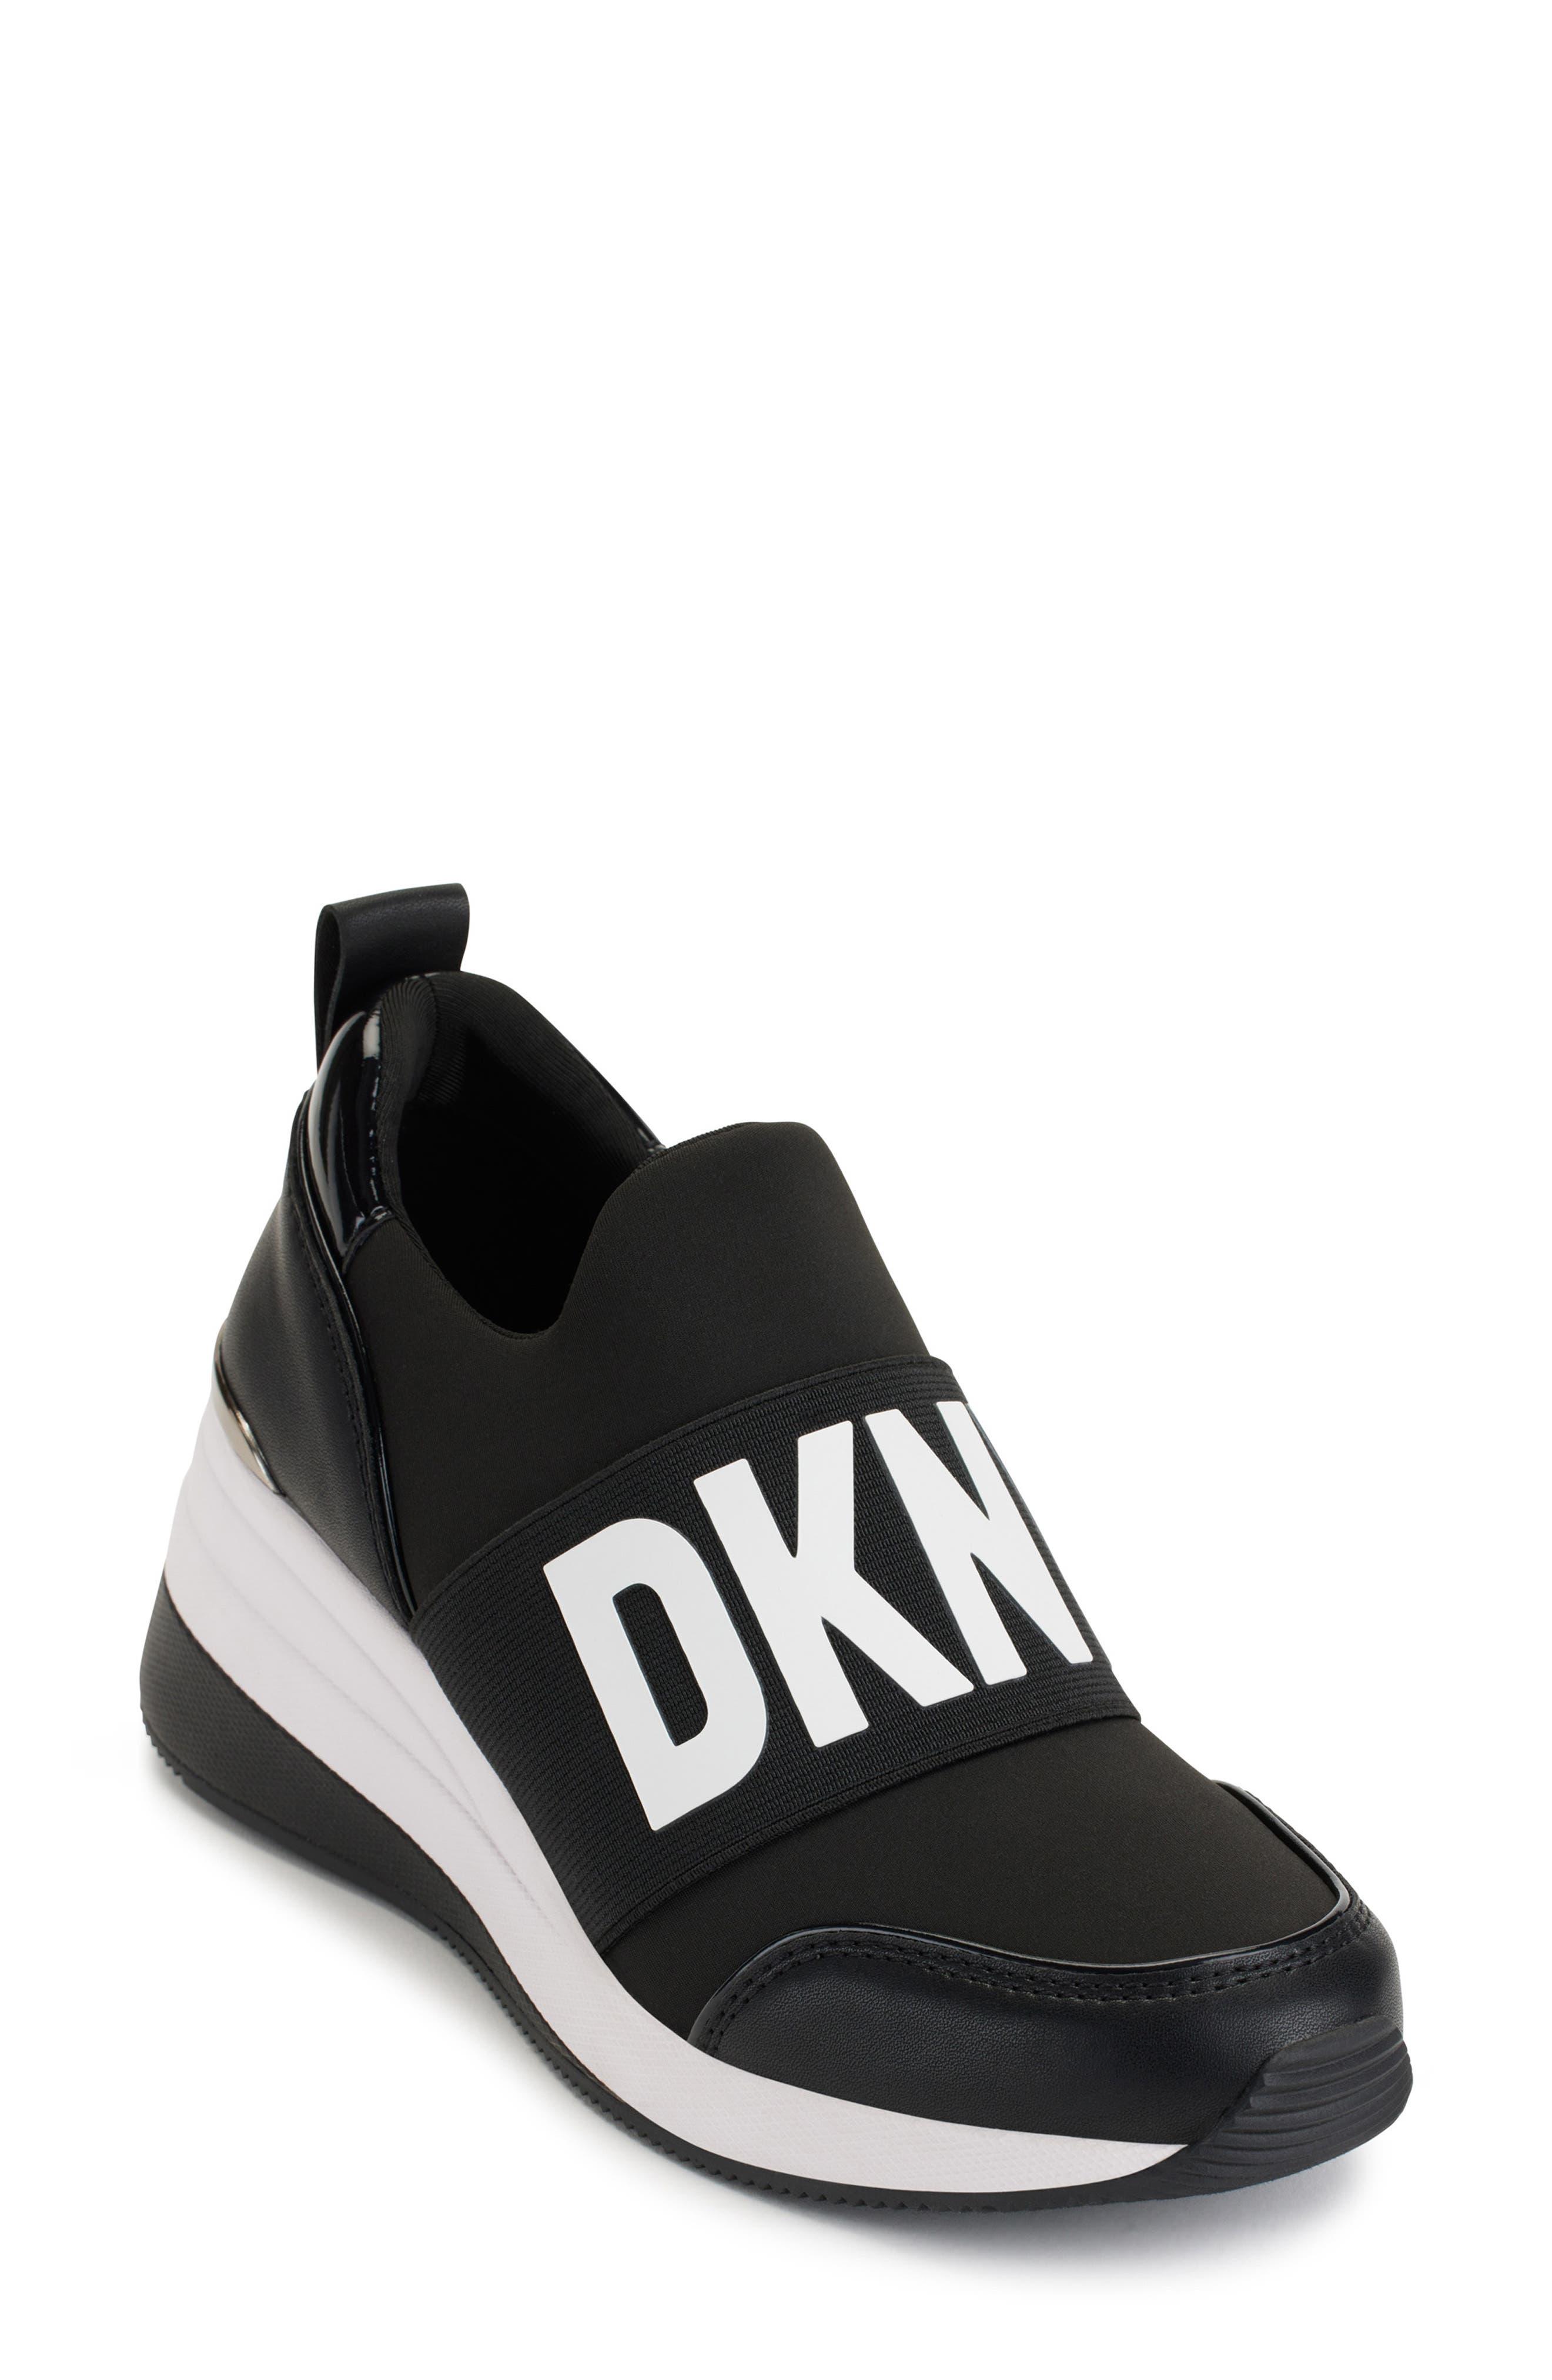 DKNY Kamryn Wedge Sneaker in Black | Lyst